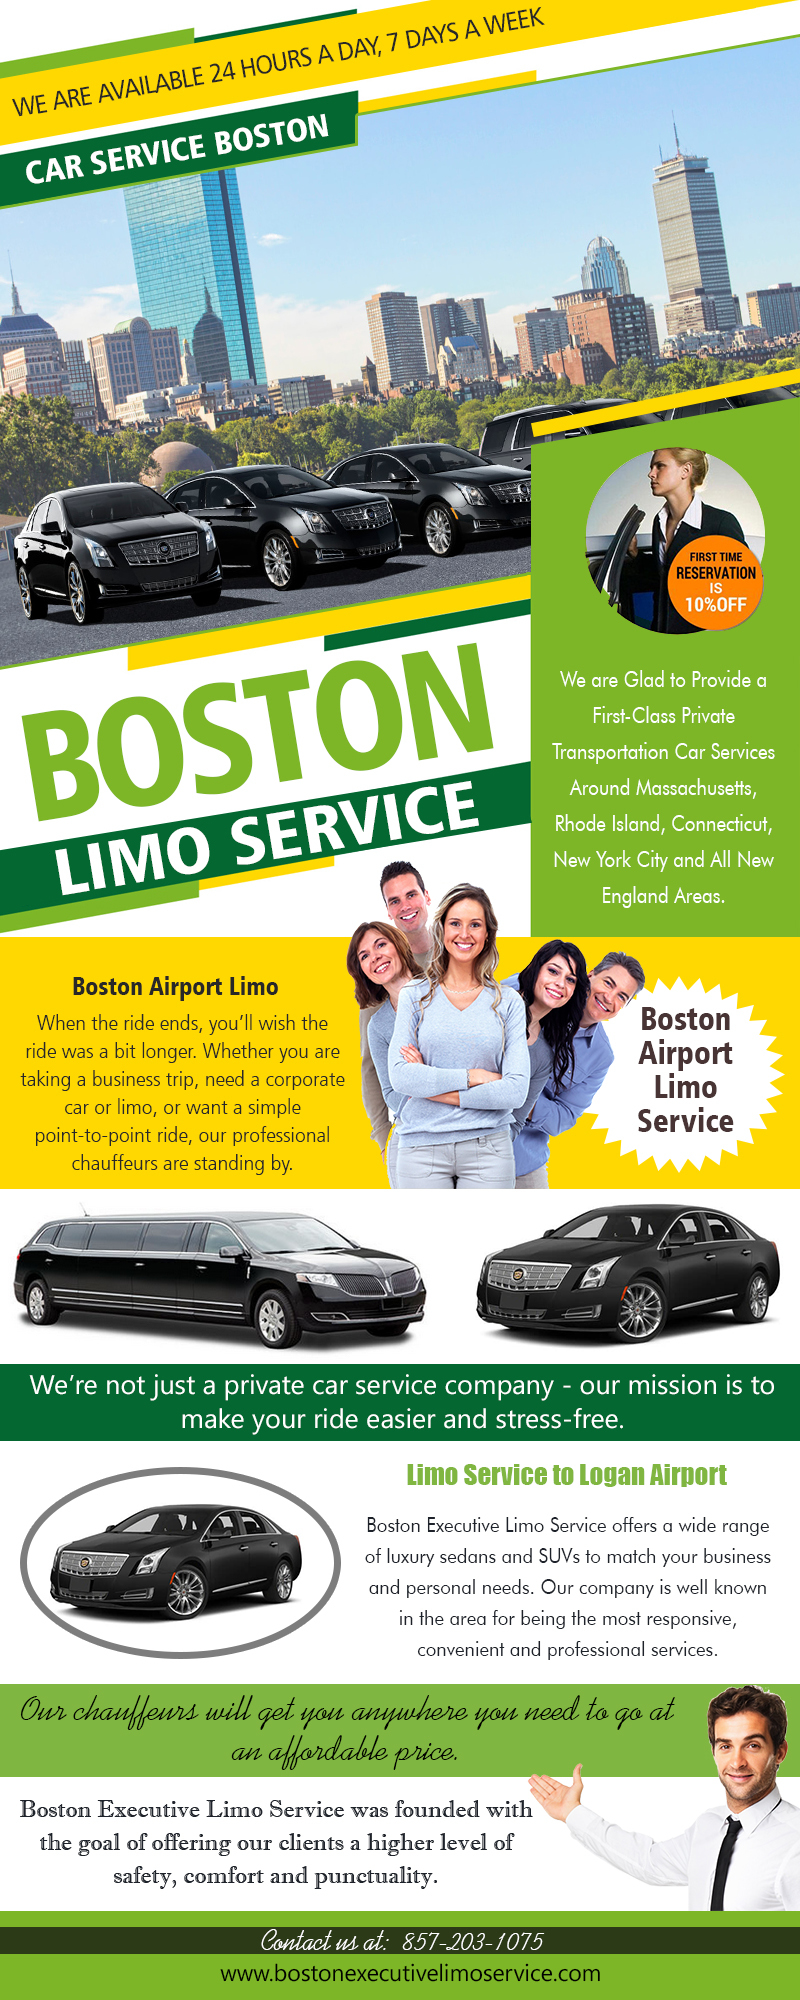 Boston Limo Service | 857-203-1075 | bostonexecutivelimoservice.com